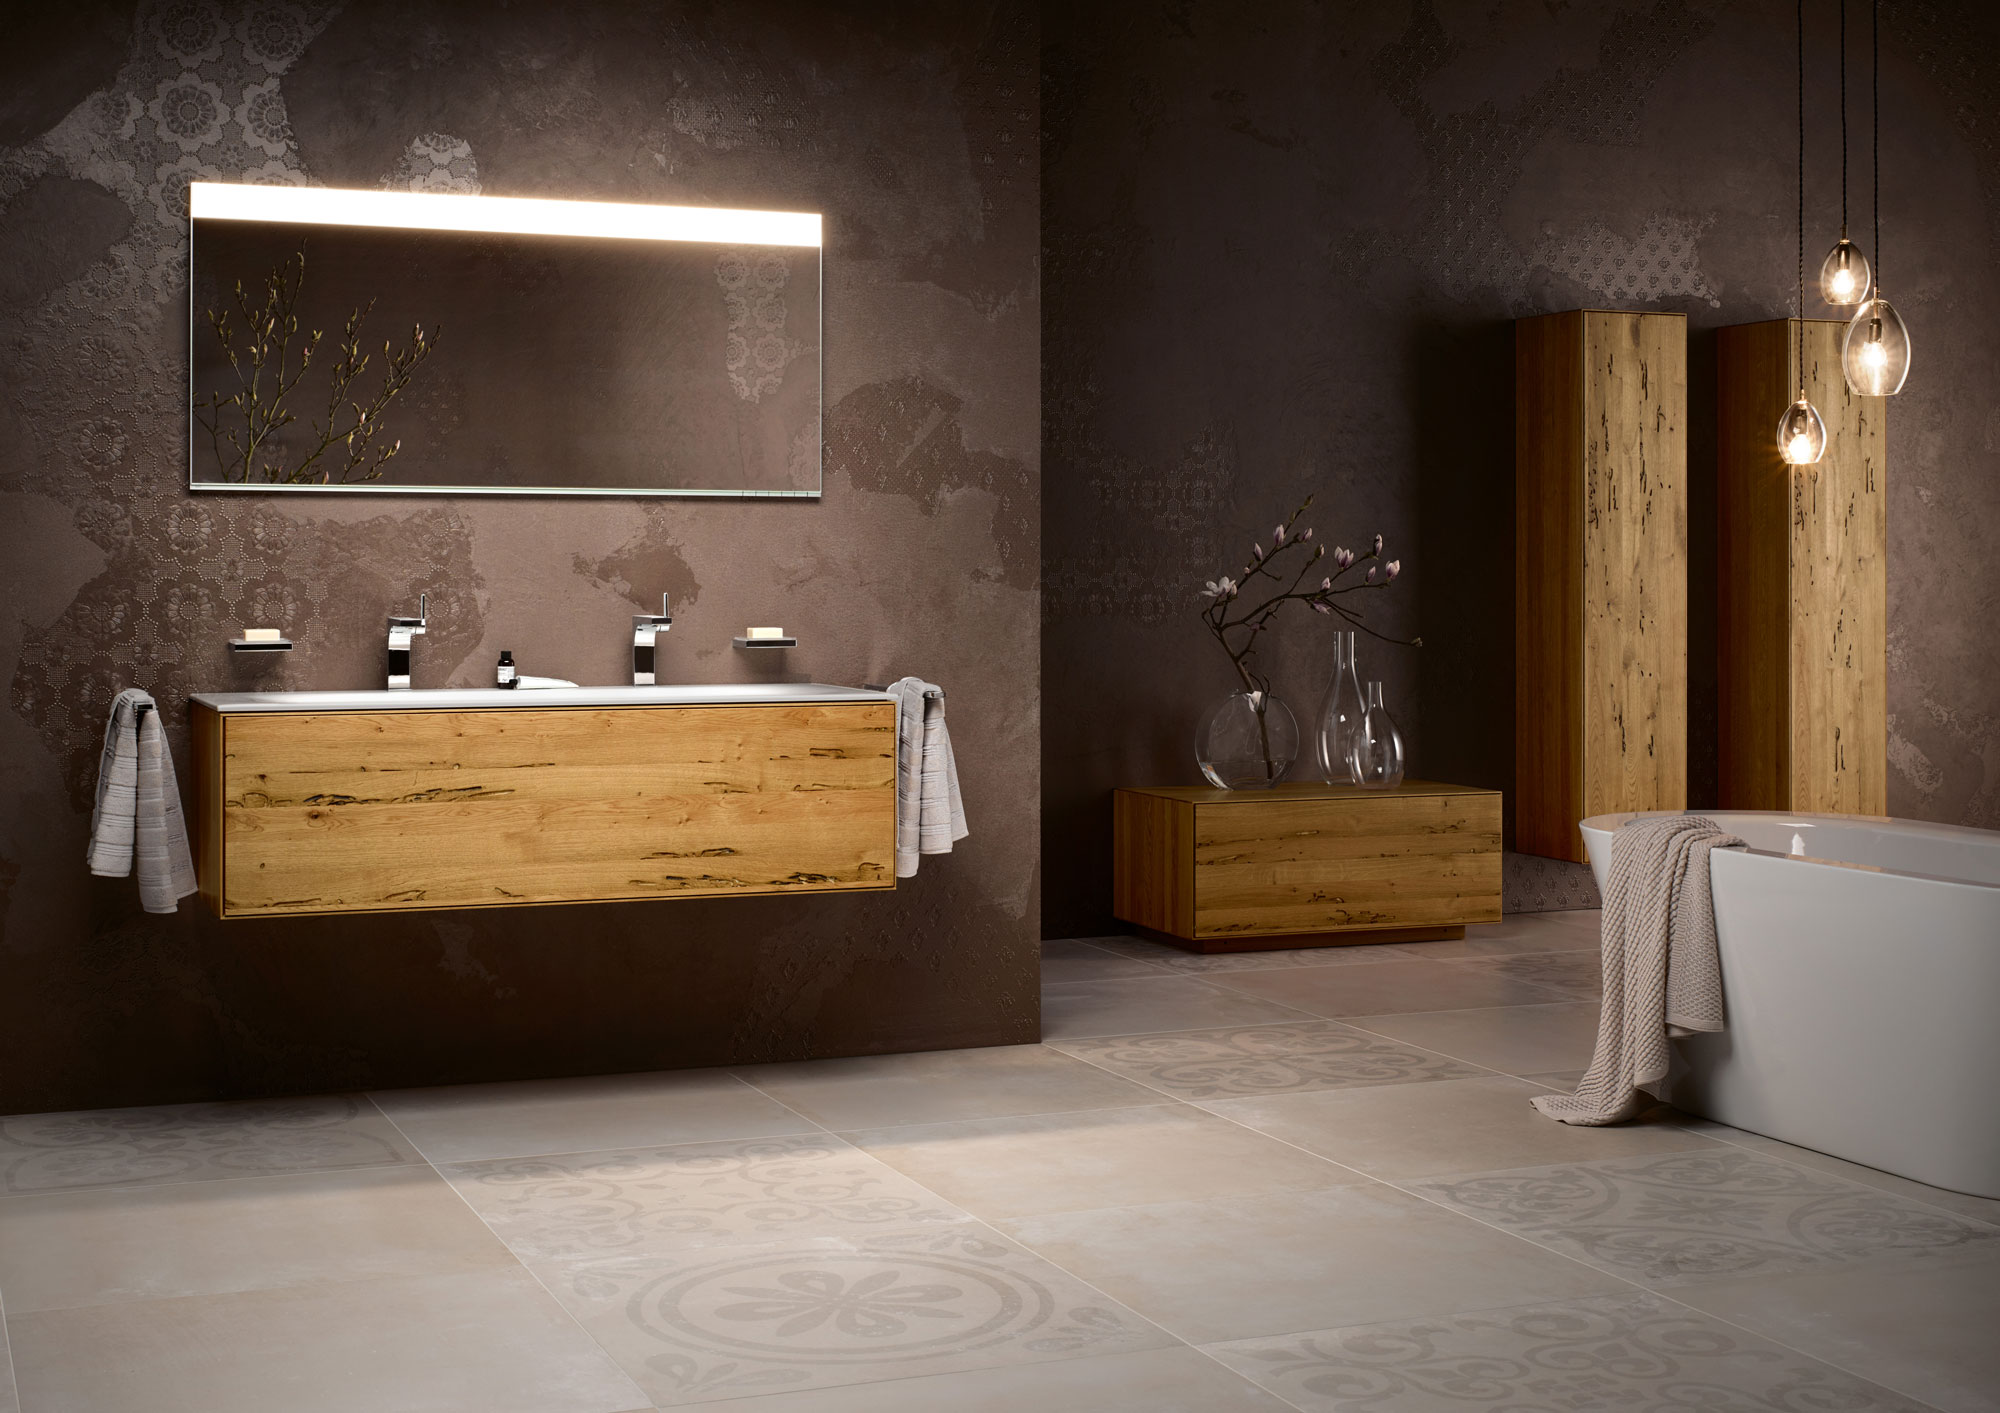 luxus: Bademöbel aus Holz, Wandspiegle mit Beleuchtung